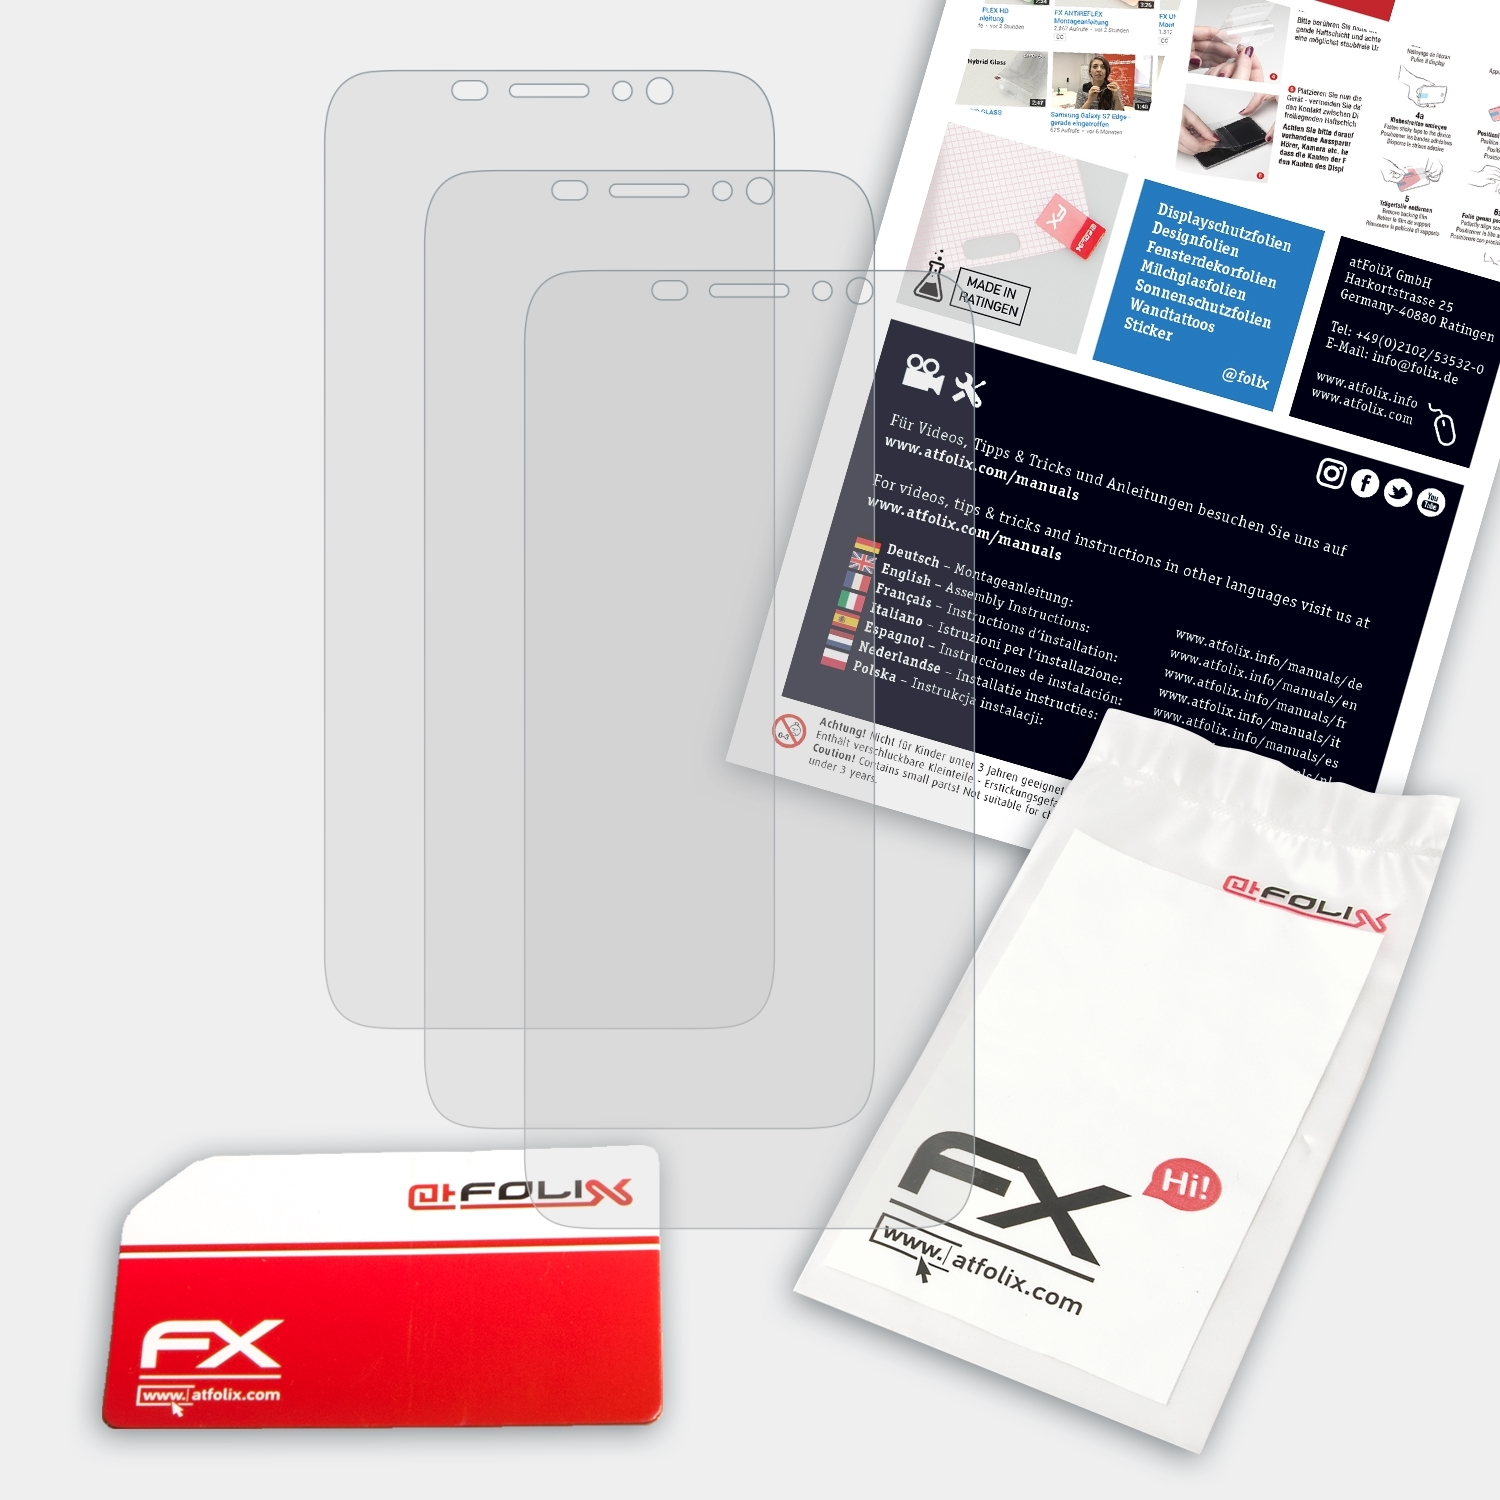 FX-Antireflex 3x ATFOLIX Ulefone Pro) S8 Displayschutz(für